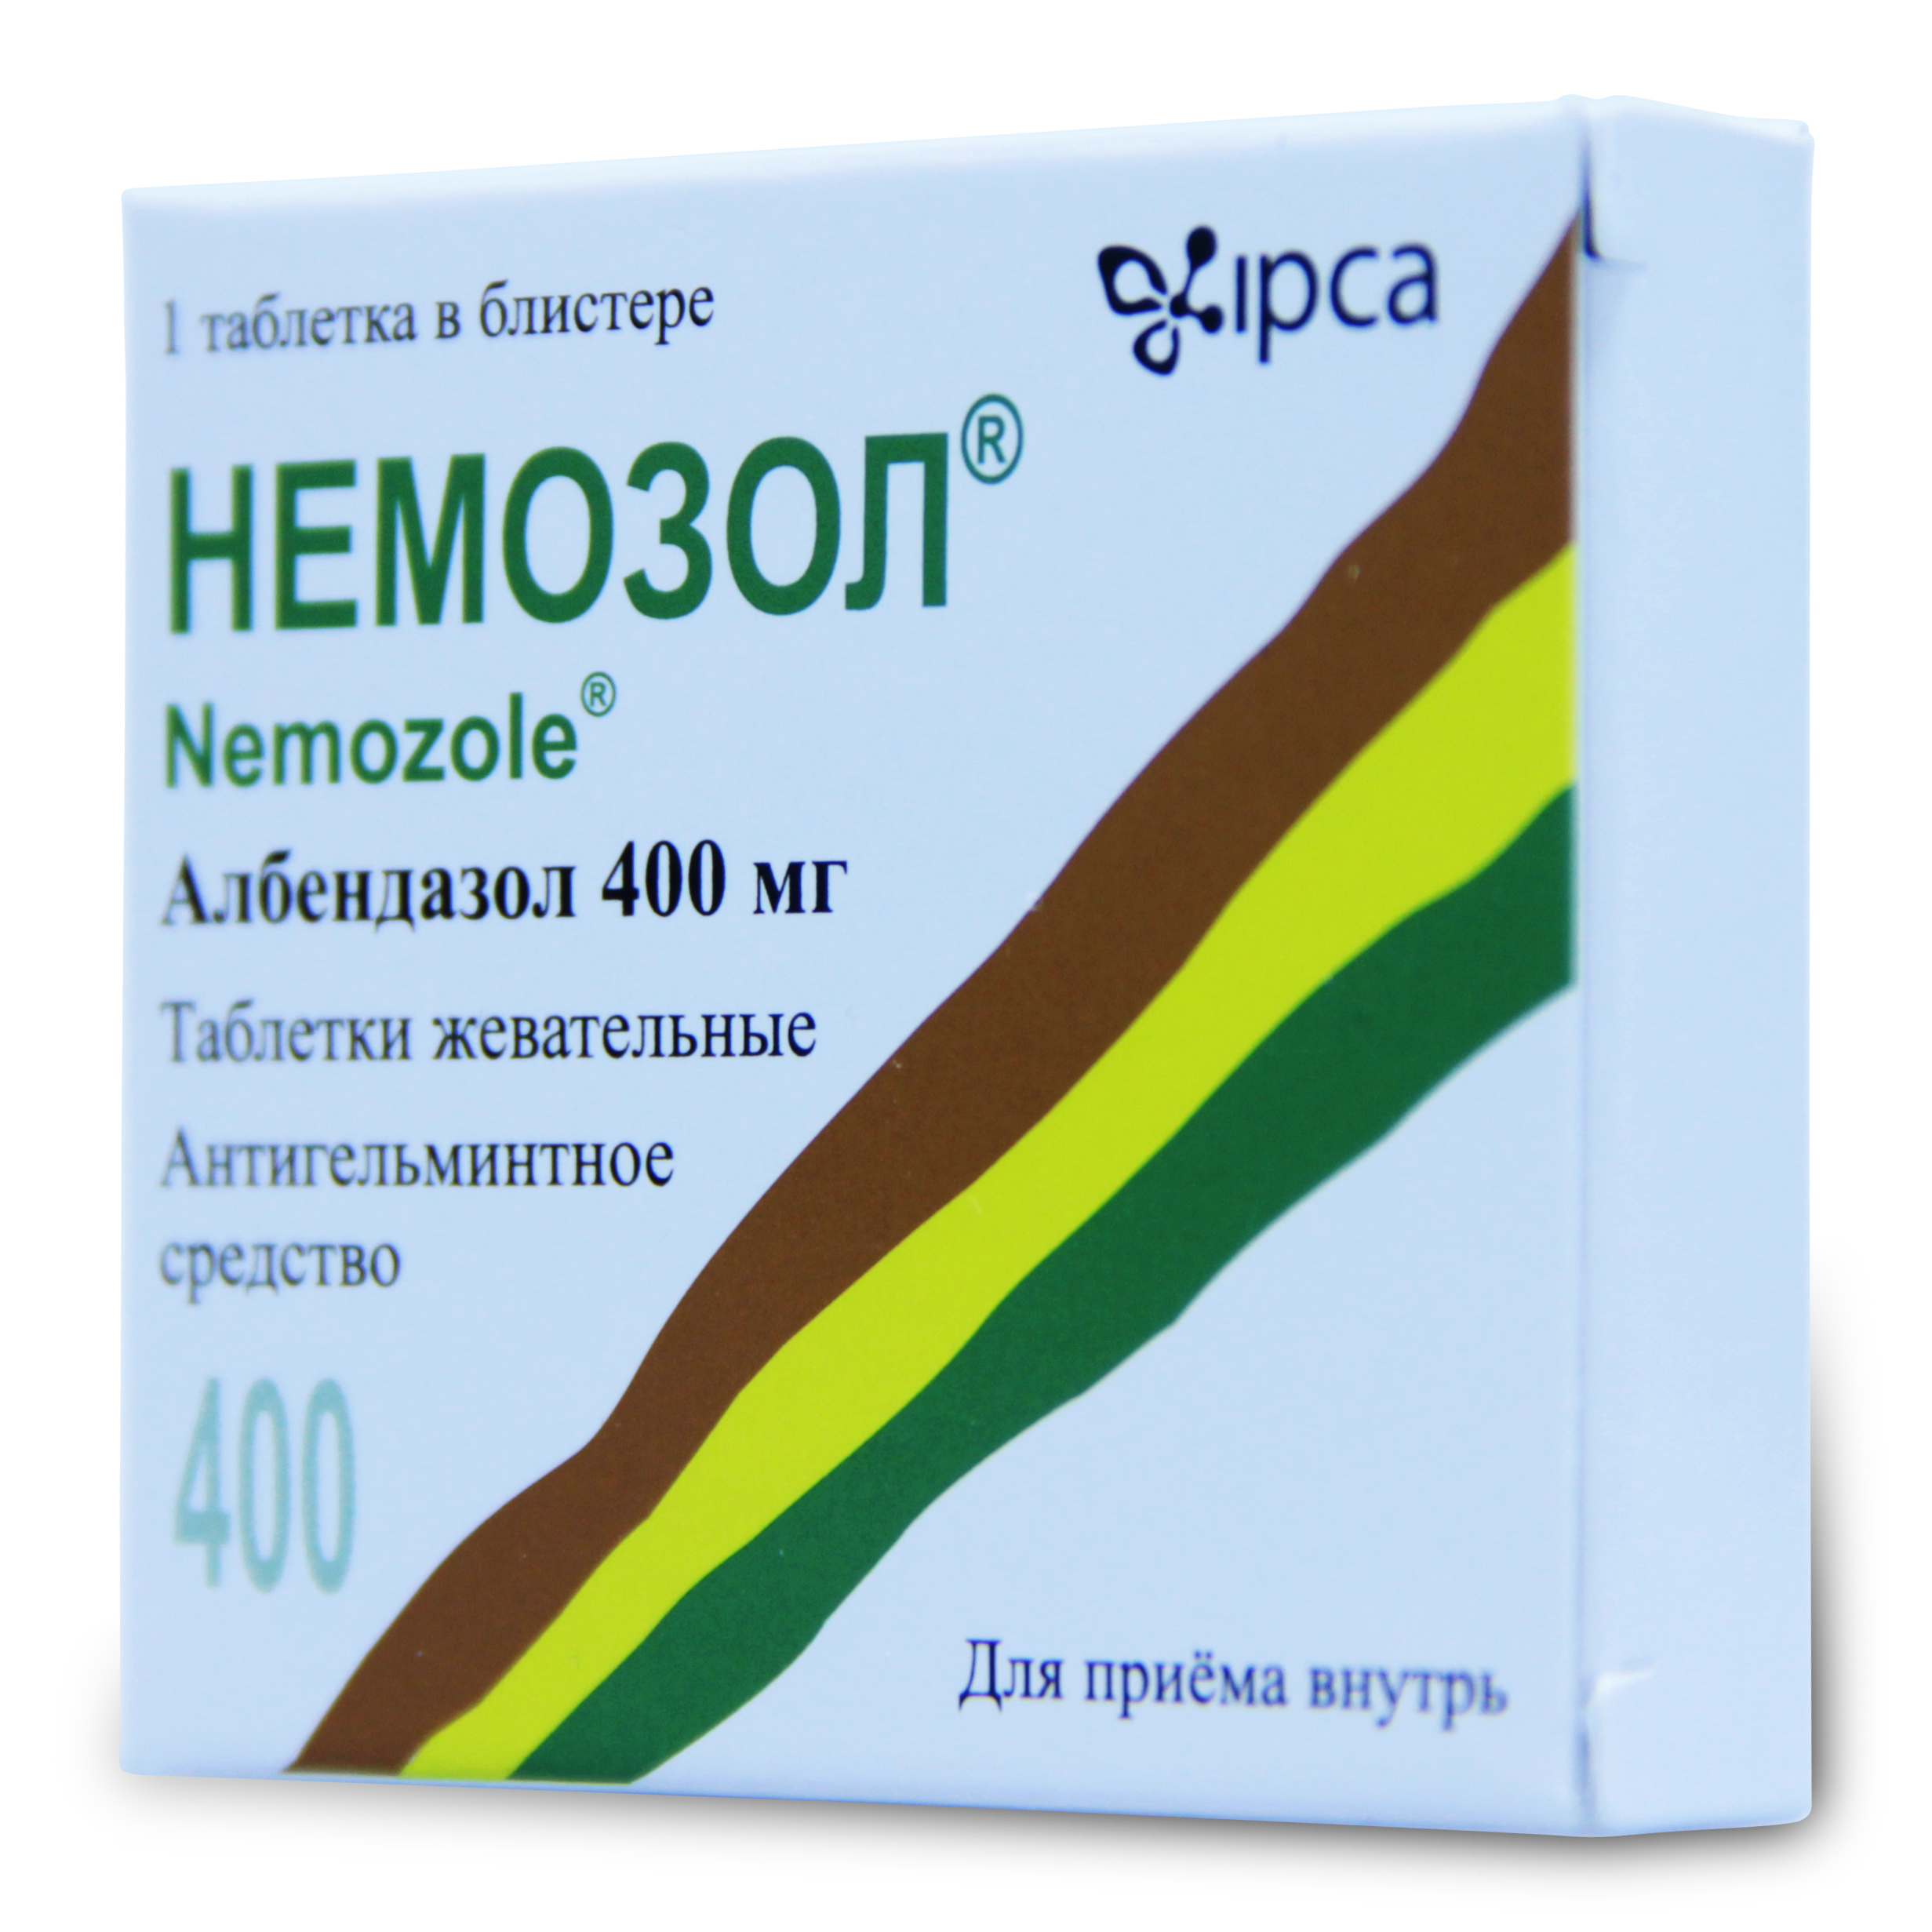 Антигельминтные препараты широкого спектра действия для человека. Немозол альбендазол 400мг. Немозол таблетки жевательные 400 мг. Немозол Албендазол 400мг. Альбендазол 400мг жевательные таблетки.